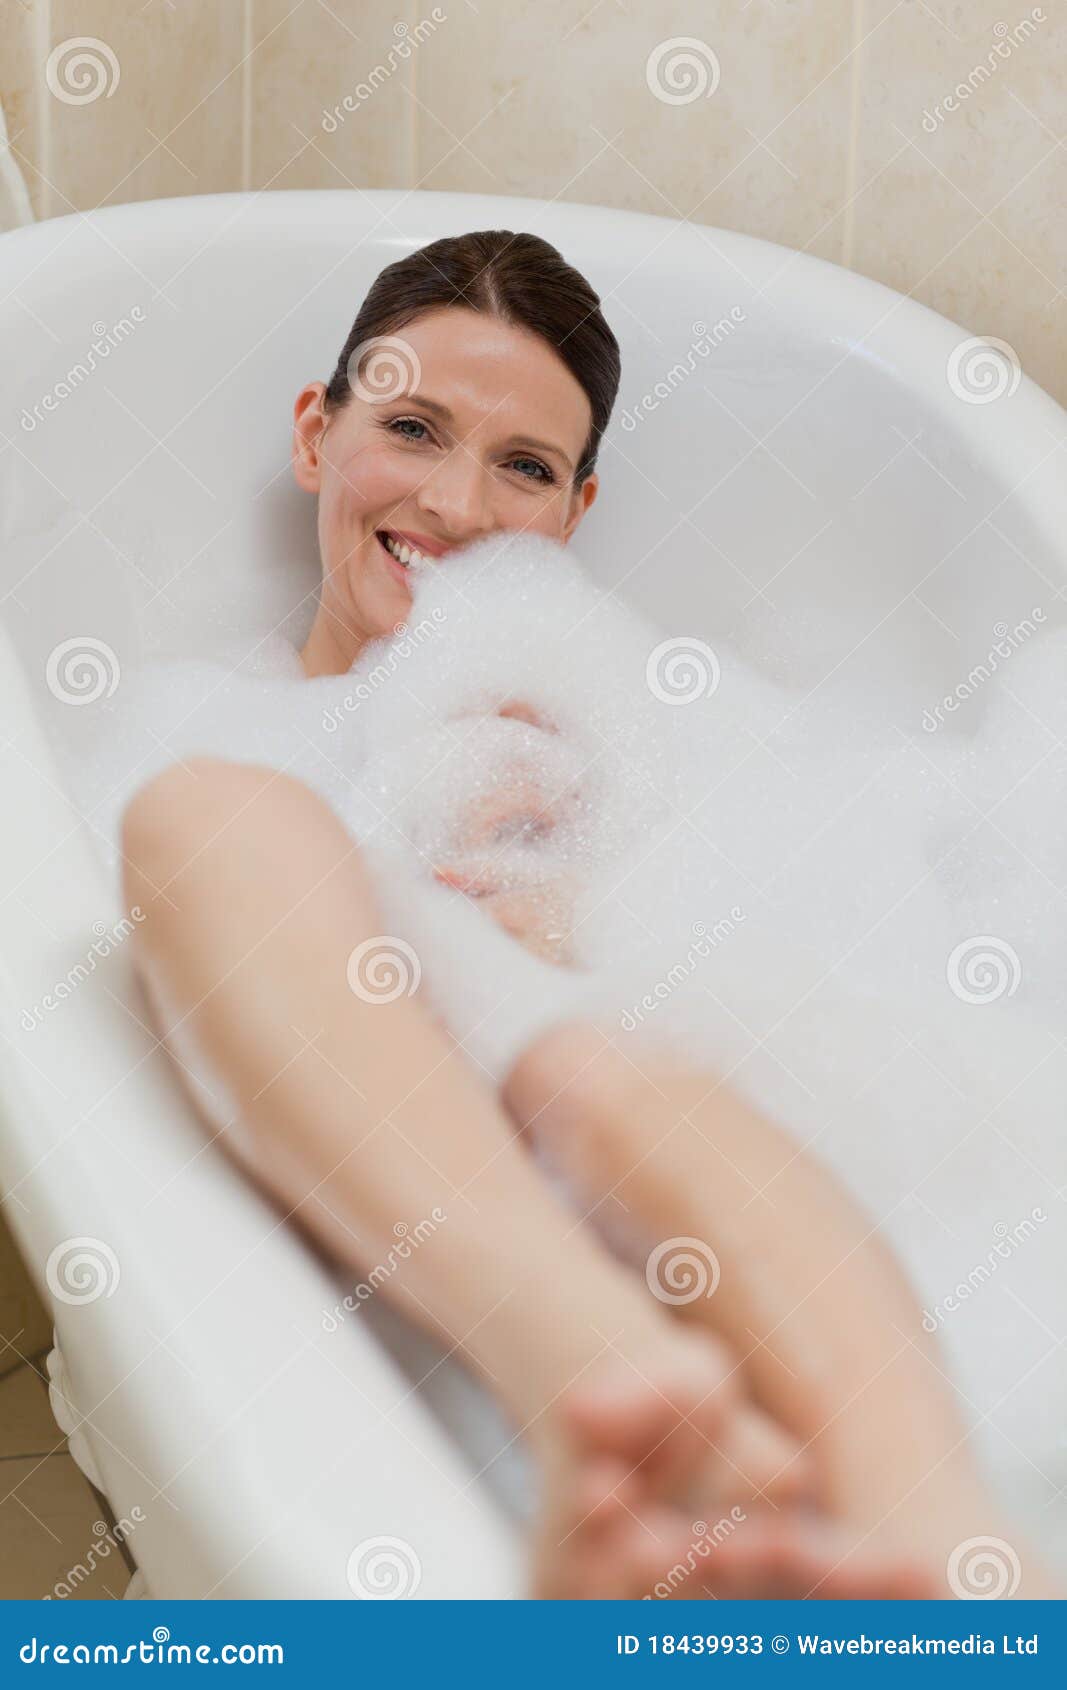 Мама подмывается. Женщина в ванной подмывается. Ноги в ванной с пеной. Женщина закрытая в ванной. Женские ноги в ванной.